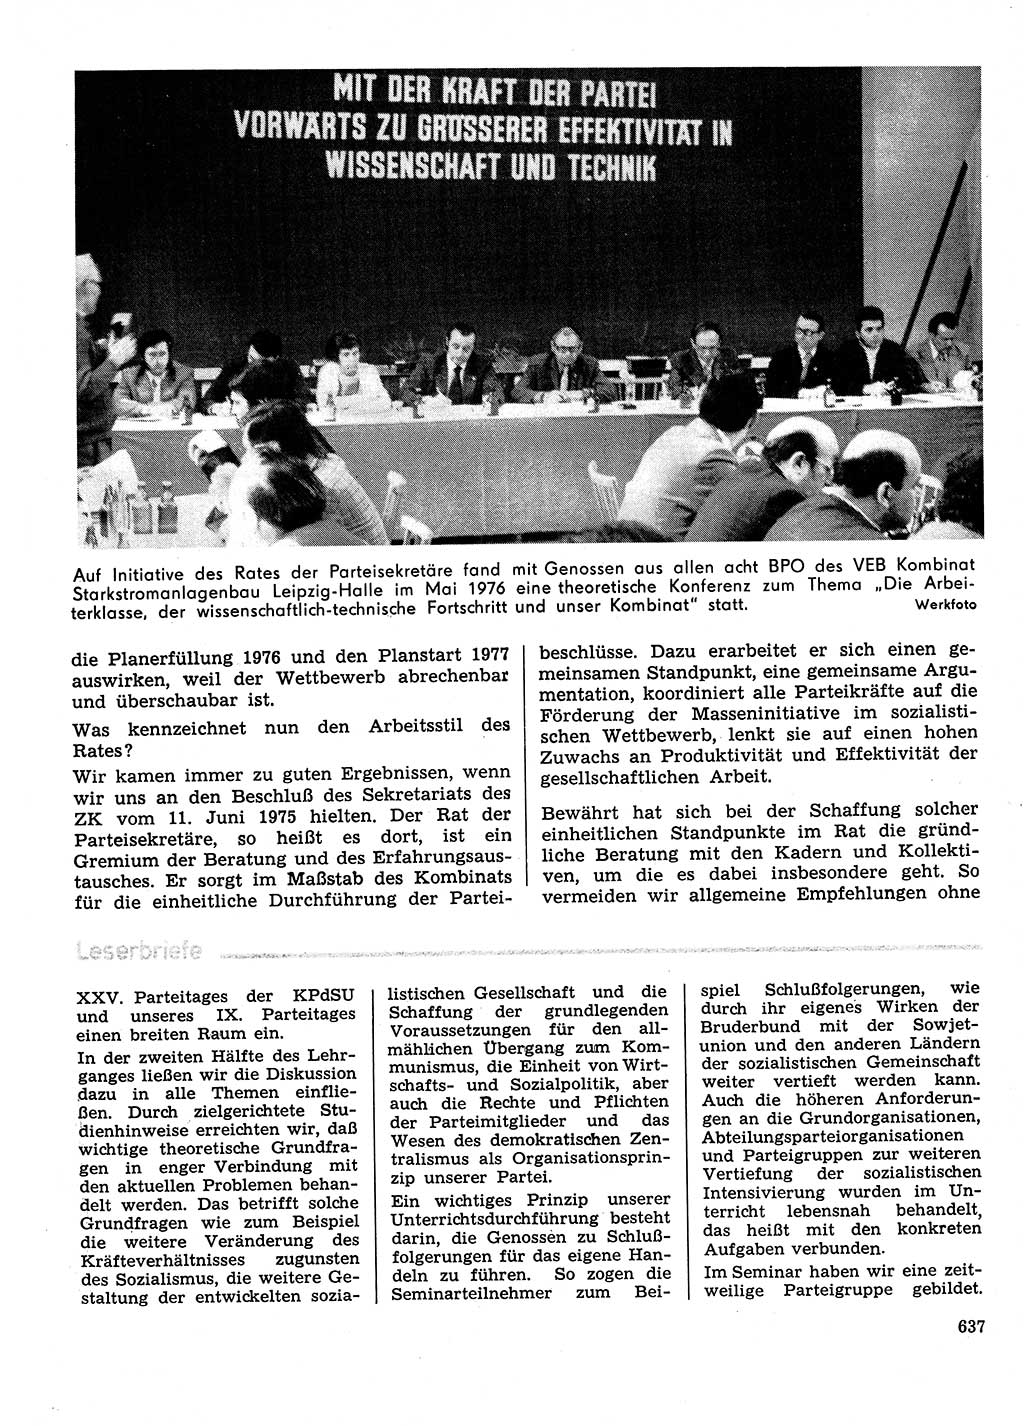 Neuer Weg (NW), Organ des Zentralkomitees (ZK) der SED (Sozialistische Einheitspartei Deutschlands) für Fragen des Parteilebens, 31. Jahrgang [Deutsche Demokratische Republik (DDR)] 1976, Seite 637 (NW ZK SED DDR 1976, S. 637)